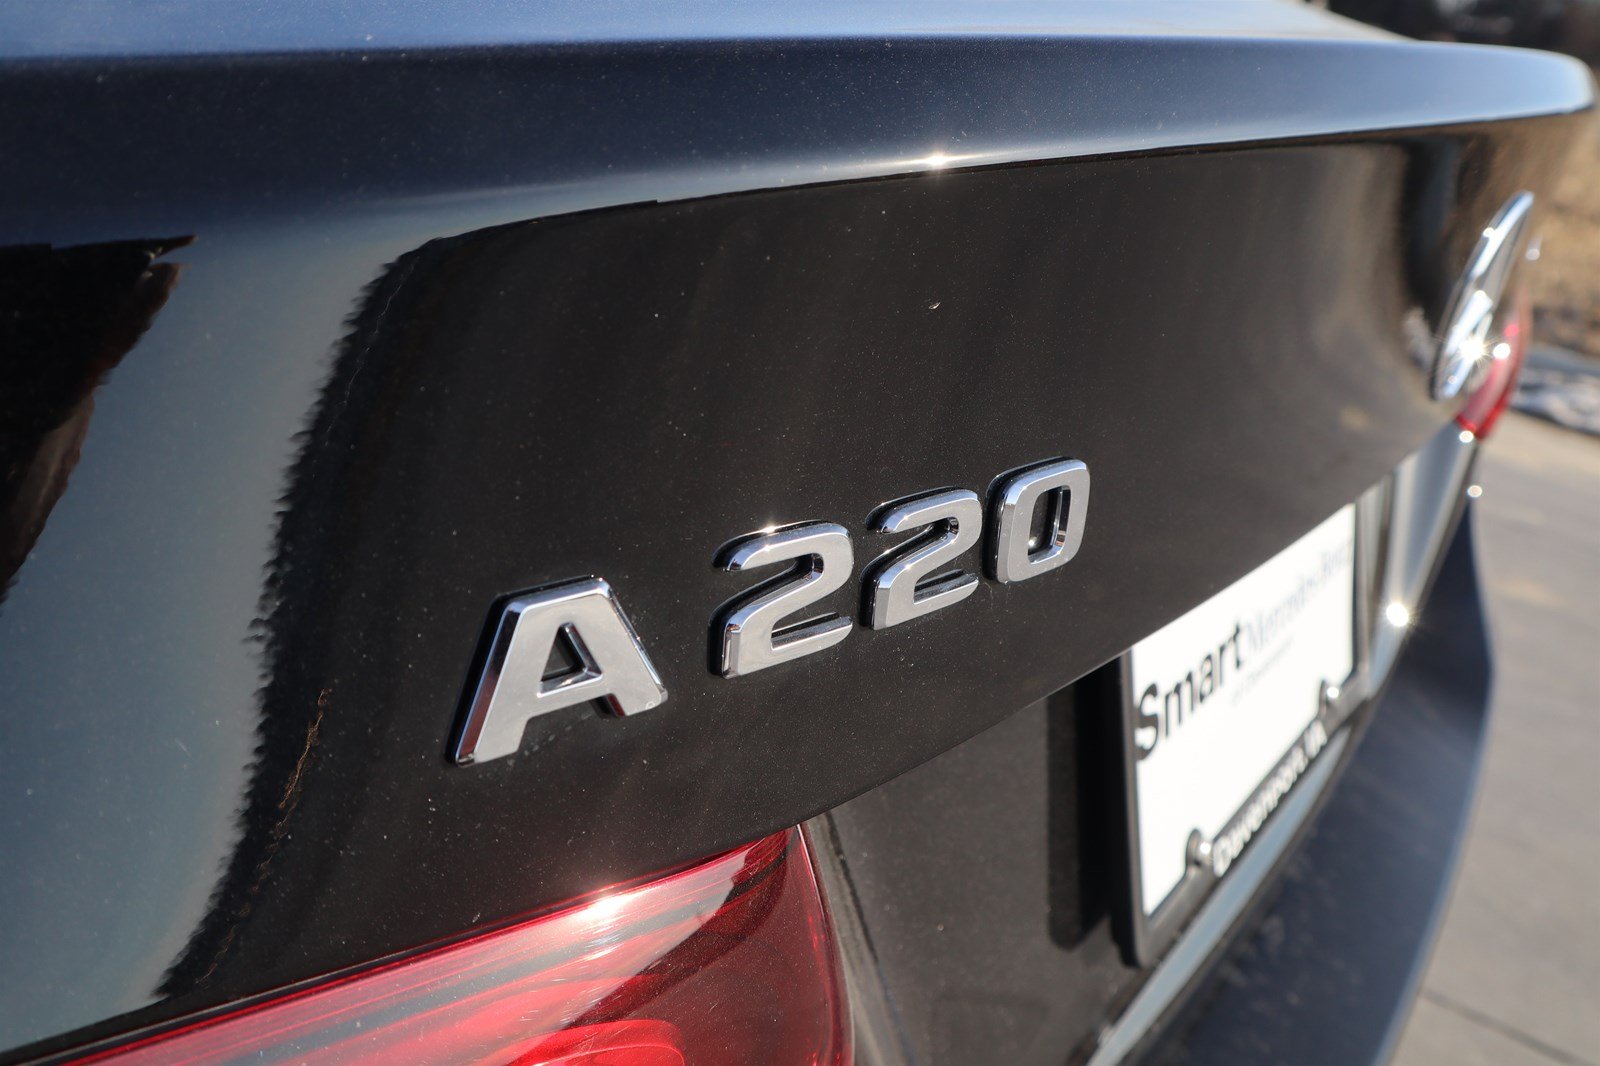 New 2020 MercedesBenz AClass A 220 4dr Car in Davenport